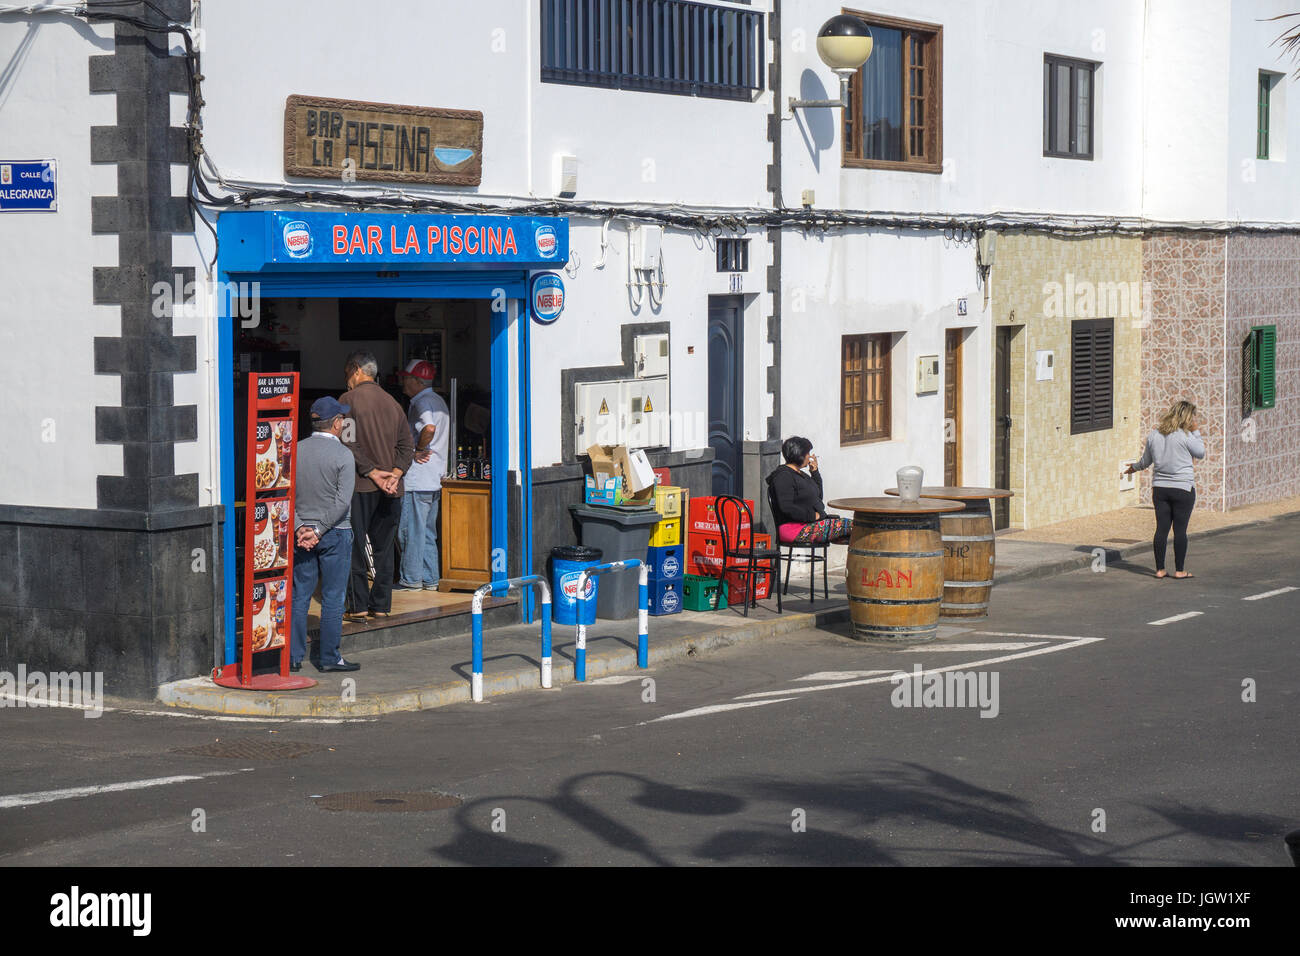 Les sections locales au bar La Piscina, Punta Mujeres, village de pêcheurs au nord de Lanzarote, Canary Islands, Spain, Europe Banque D'Images